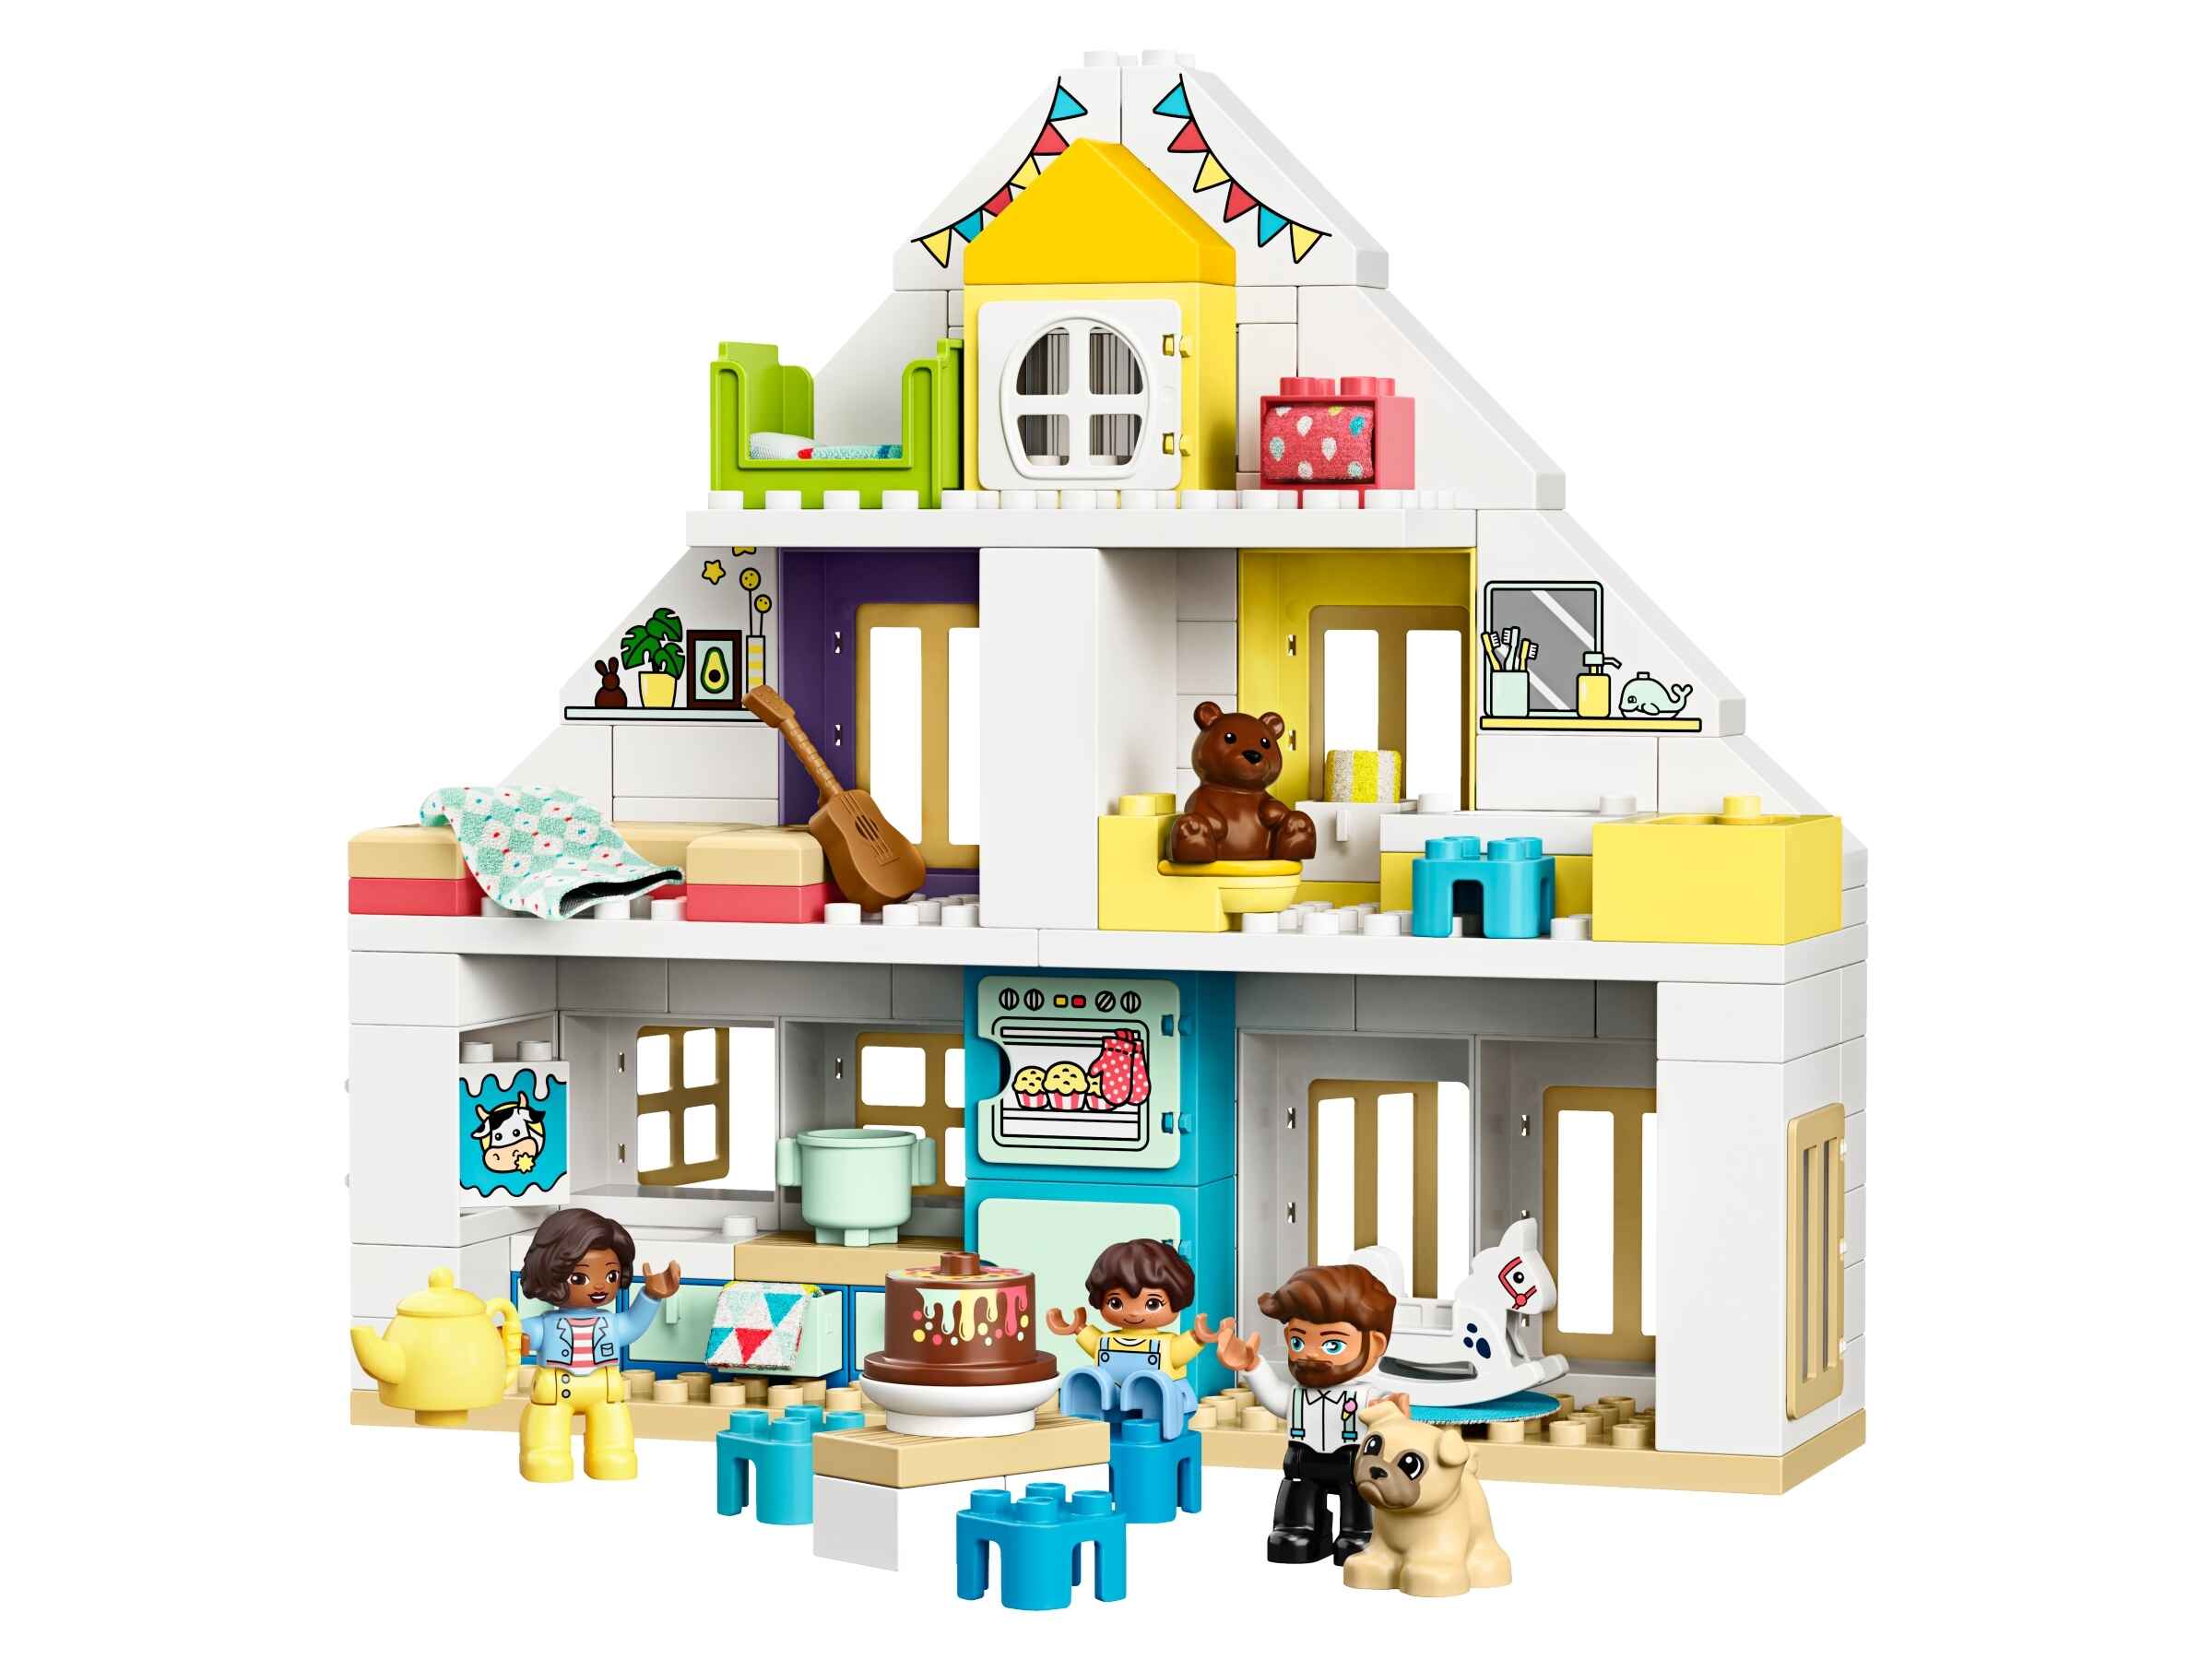 LEGO 10929 DUPLO Unser Wohnhaus 3-in-1 Set, Puppenhaus mit  Figuren u. Tieren 